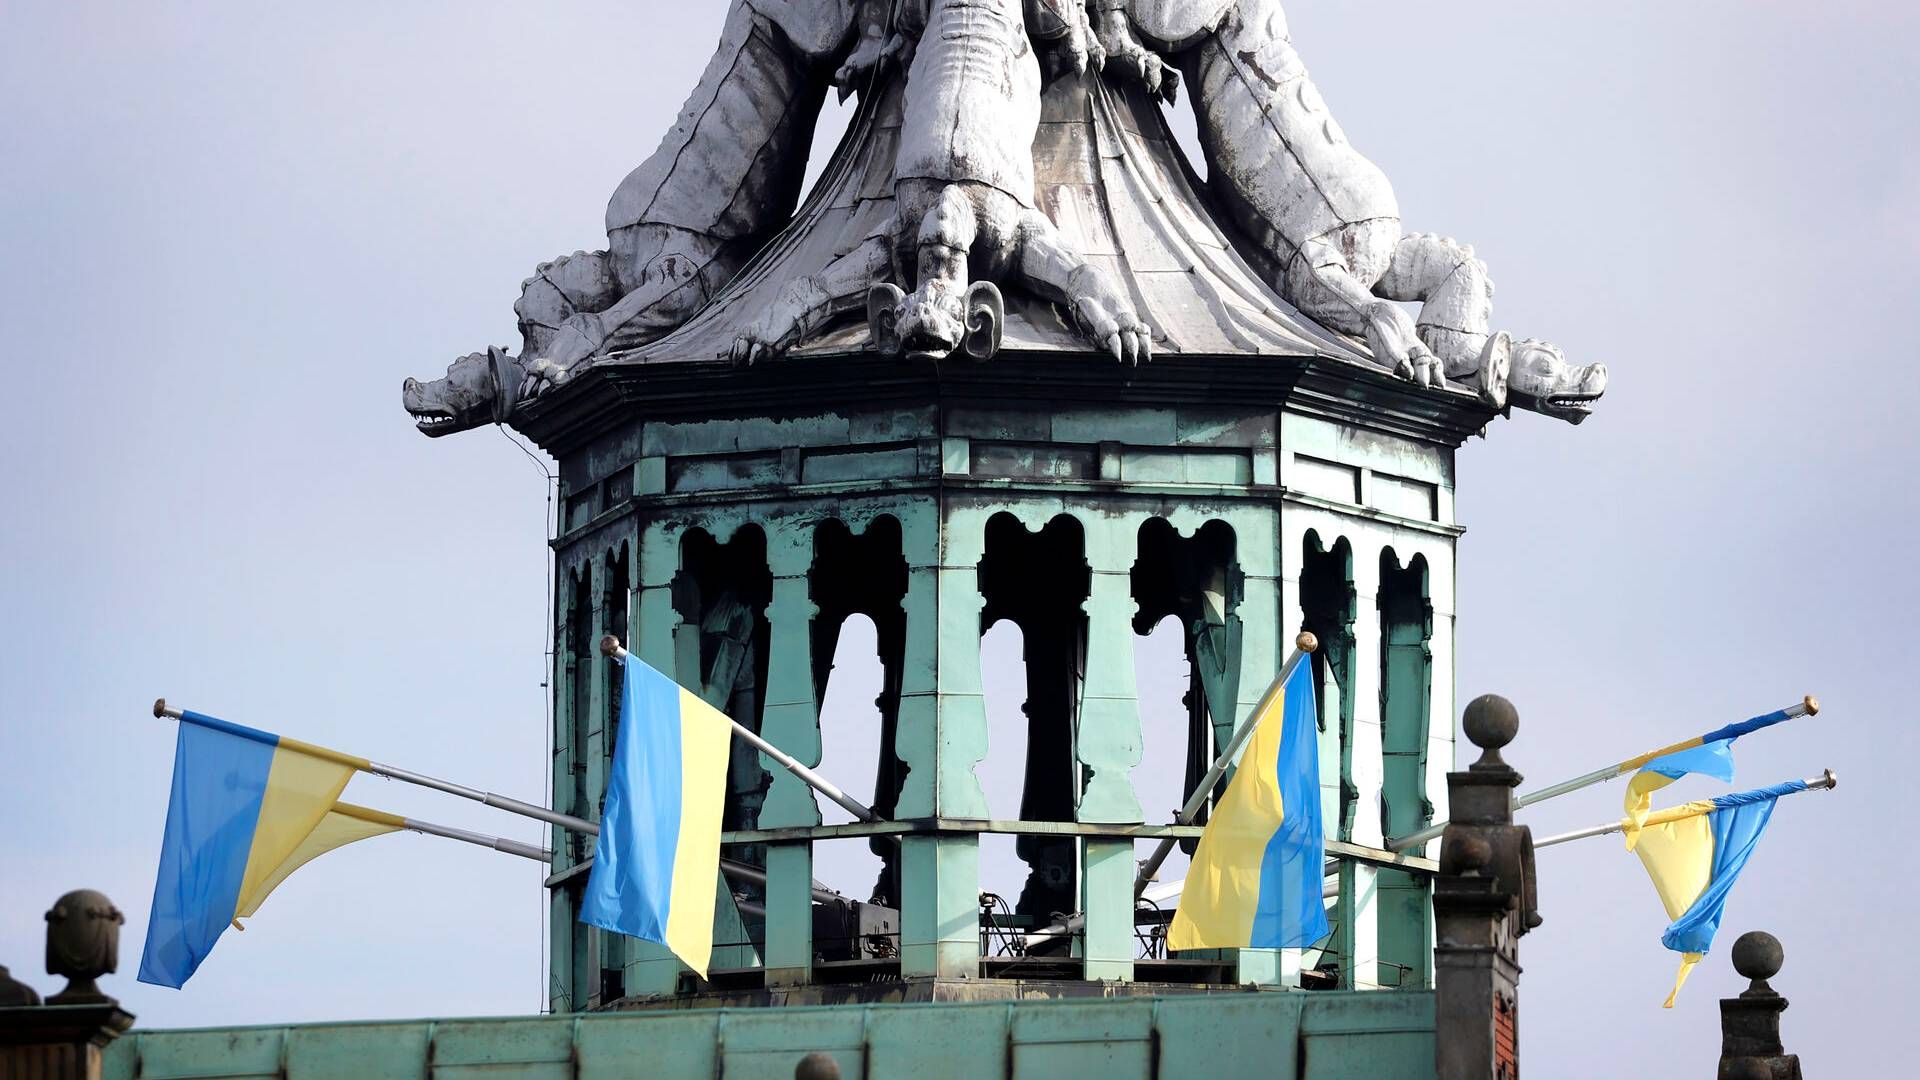 Dansk Erhverv, der holder til i børsbygningen, som her ses med ukrainske flag, ser ikke nogen værdi i at genskabe skabelonen til en pressemeddelelse, hvis den virker. | Foto: Jens Dresling/Ritzau Scanpix